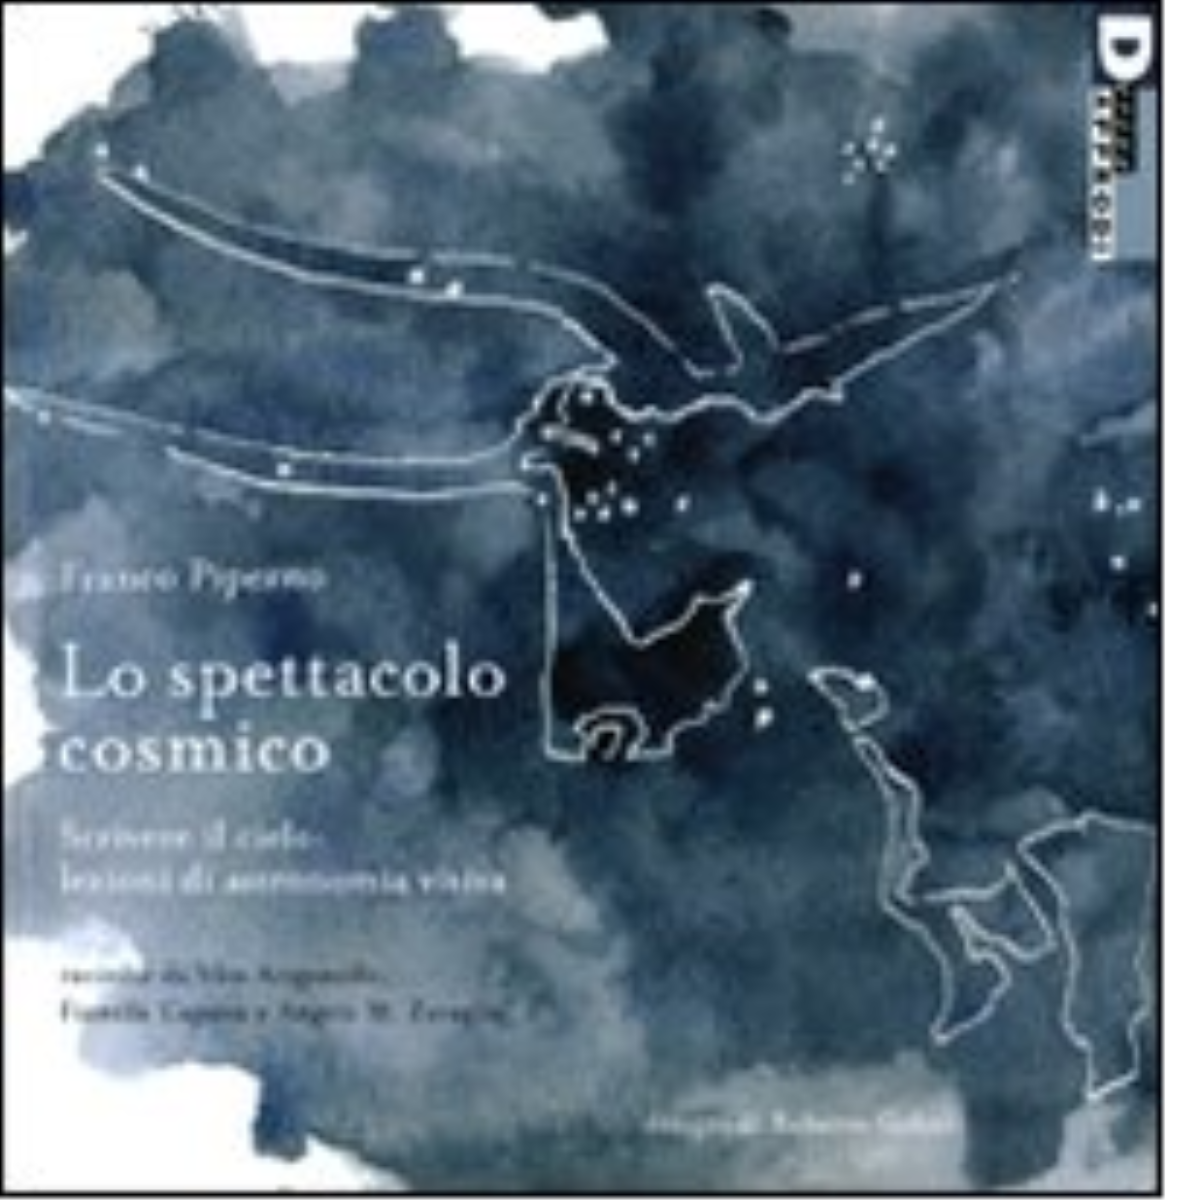 LO SPETTACOLO COSMICO. - FRANCO PIPERNO - DeriveApprodi editore, 2010